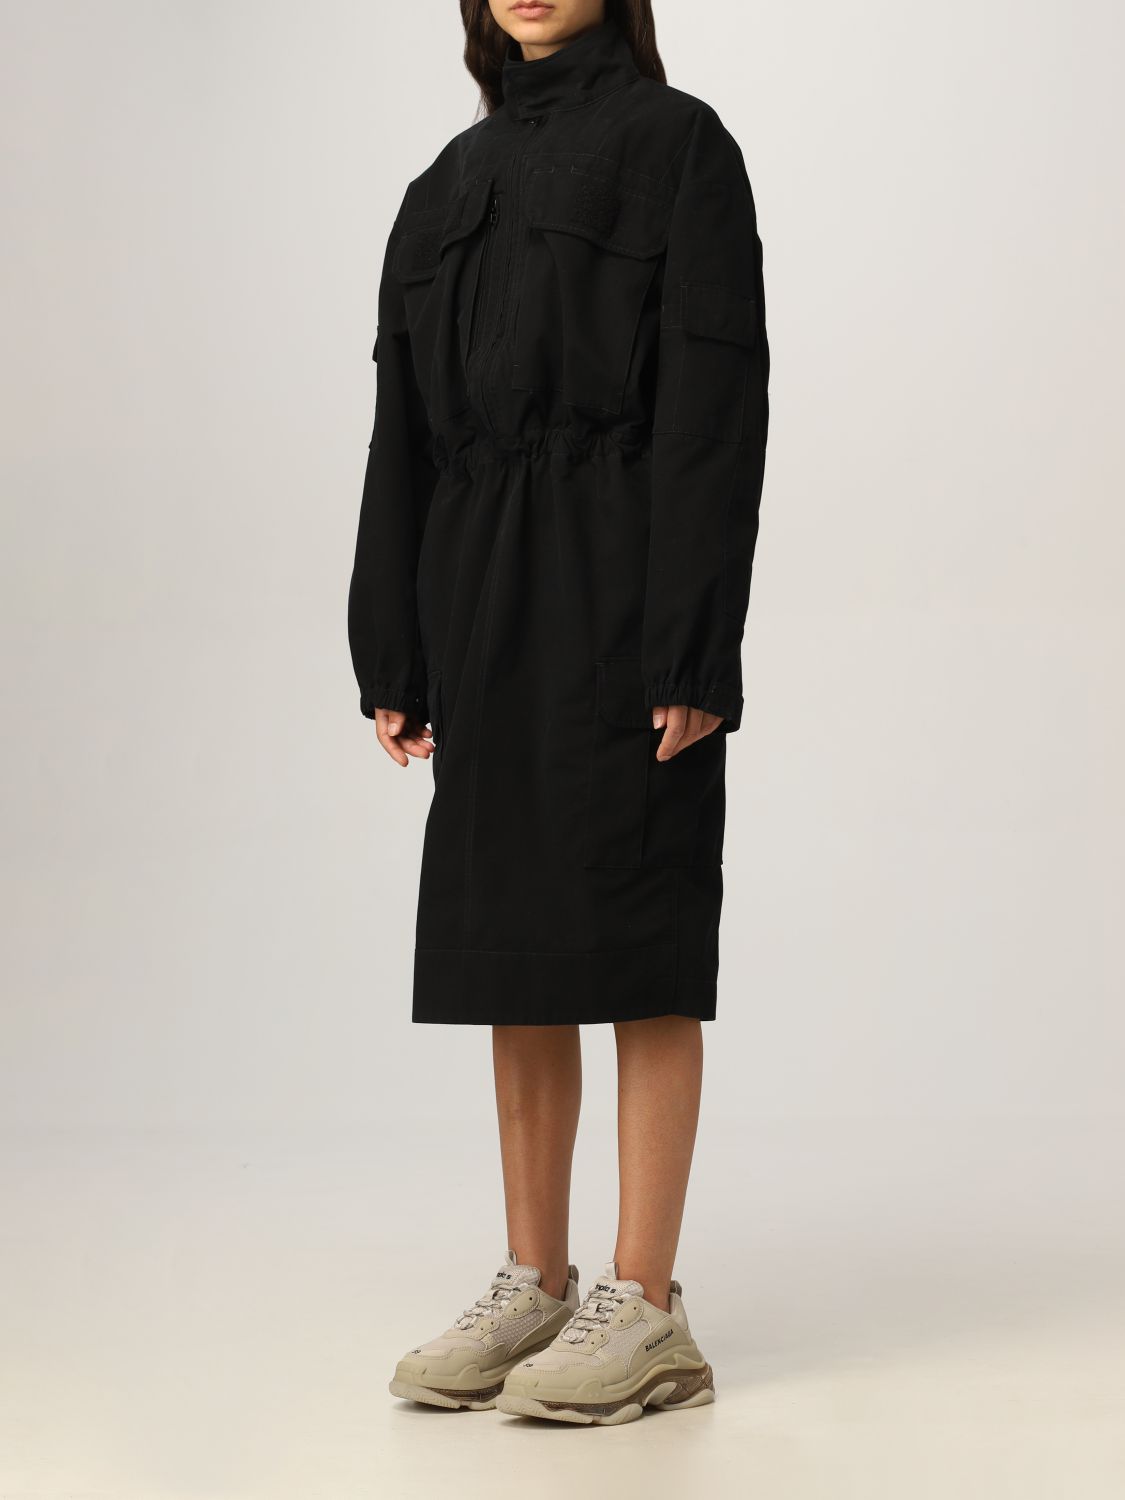 BALENCIAGA: cargo dress in cotton ripstop - Black | Balenciaga dress ...